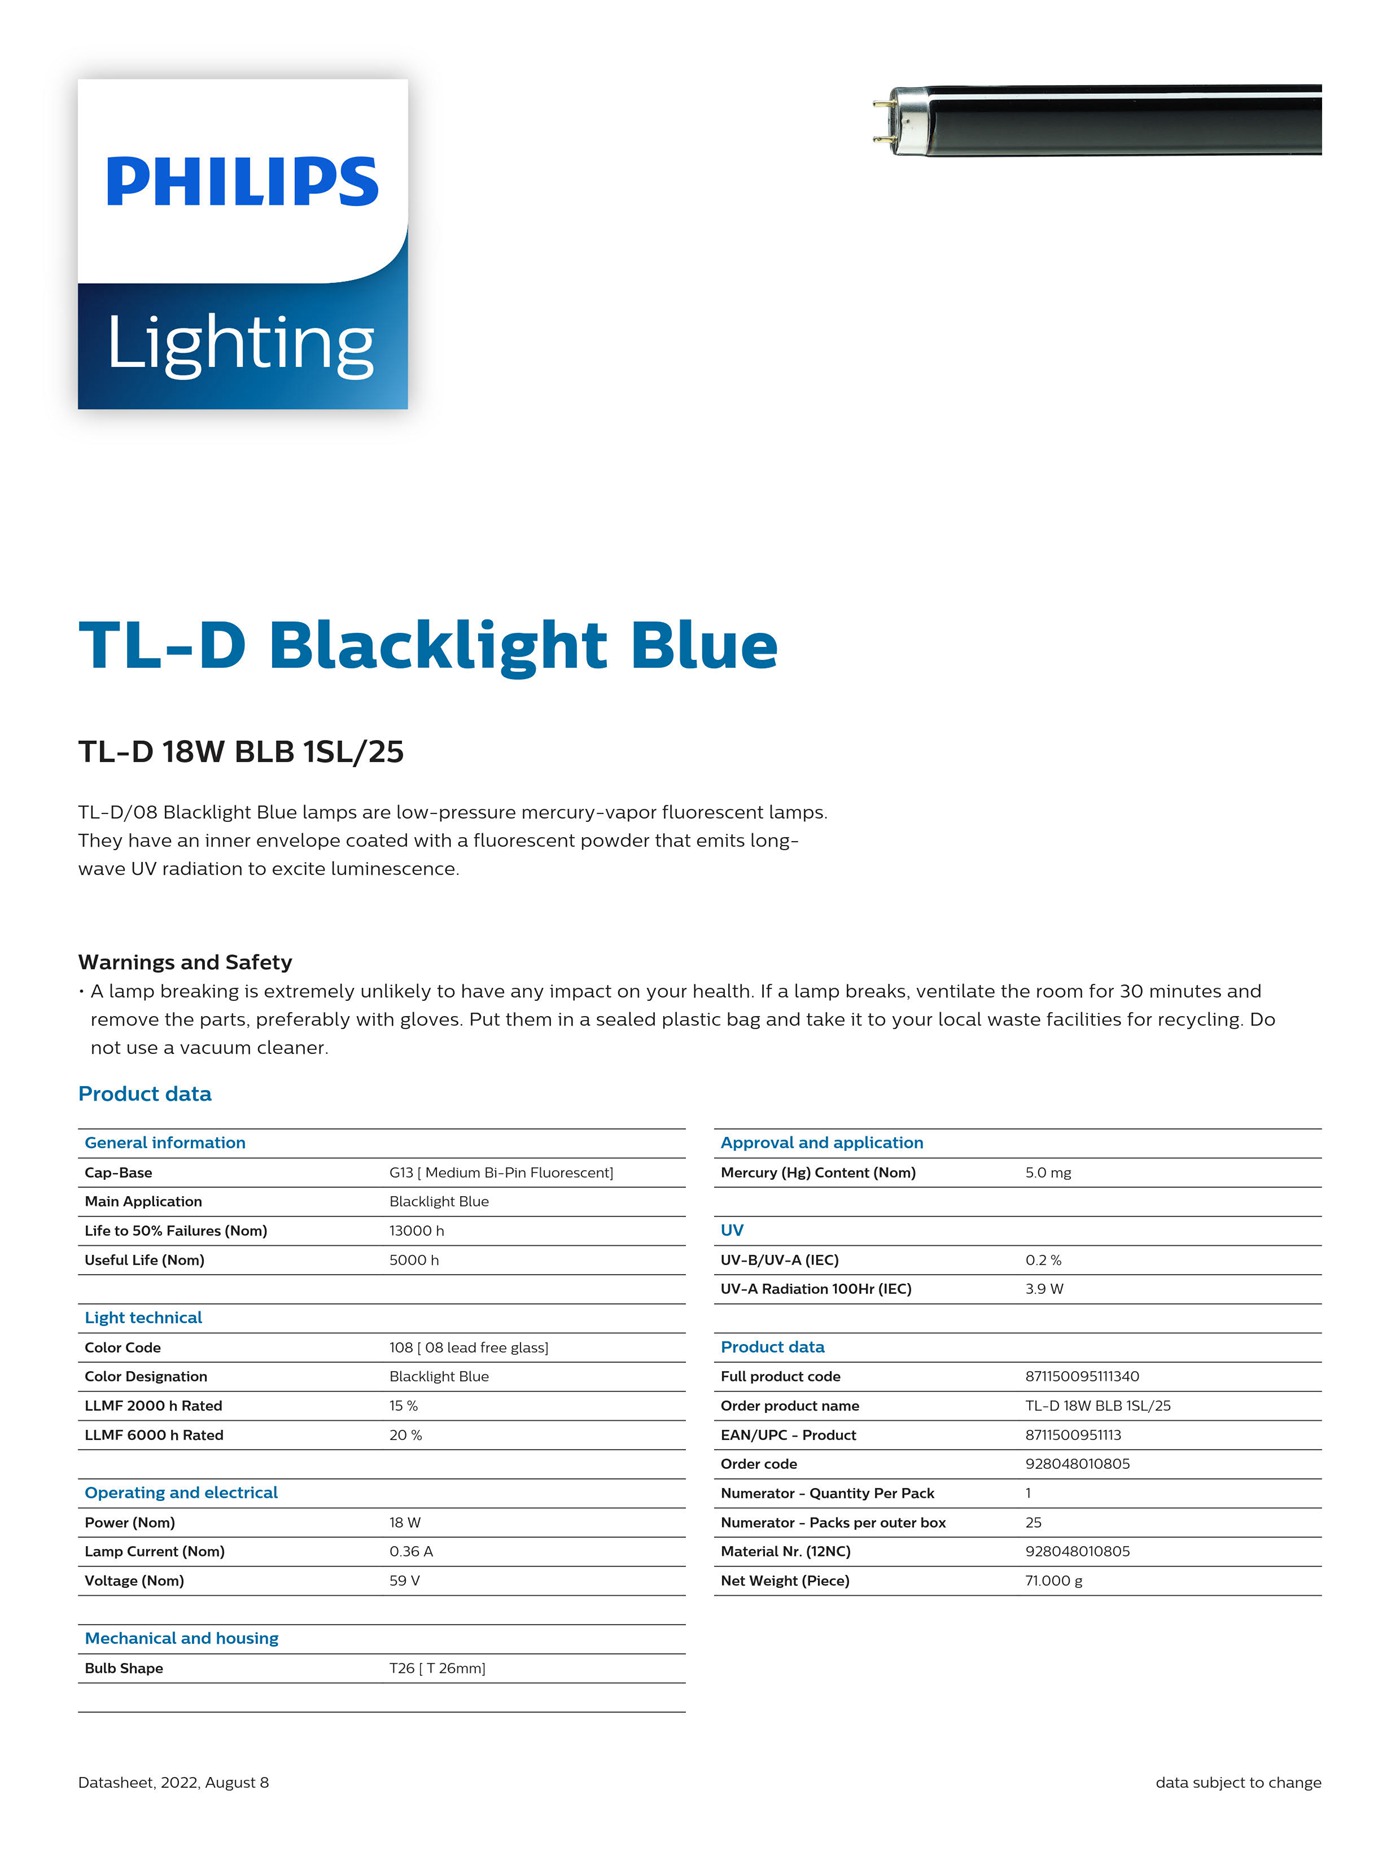 PHILIPS Blacklight Blue TL-D 18W BLB 1SL/25 928048010805